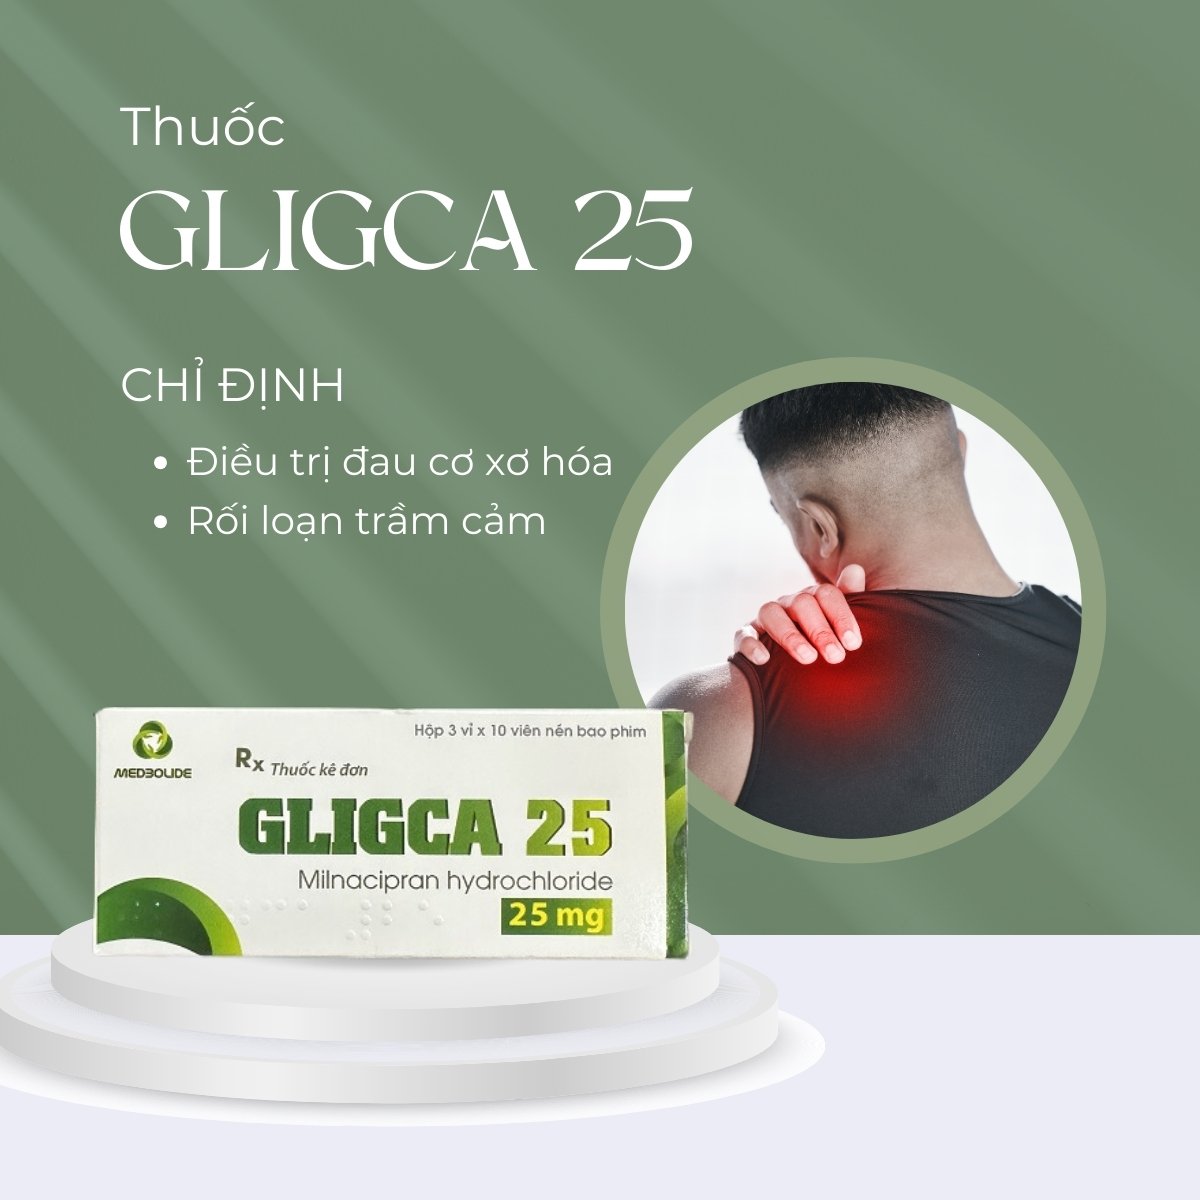 Thuốc Gligca 25